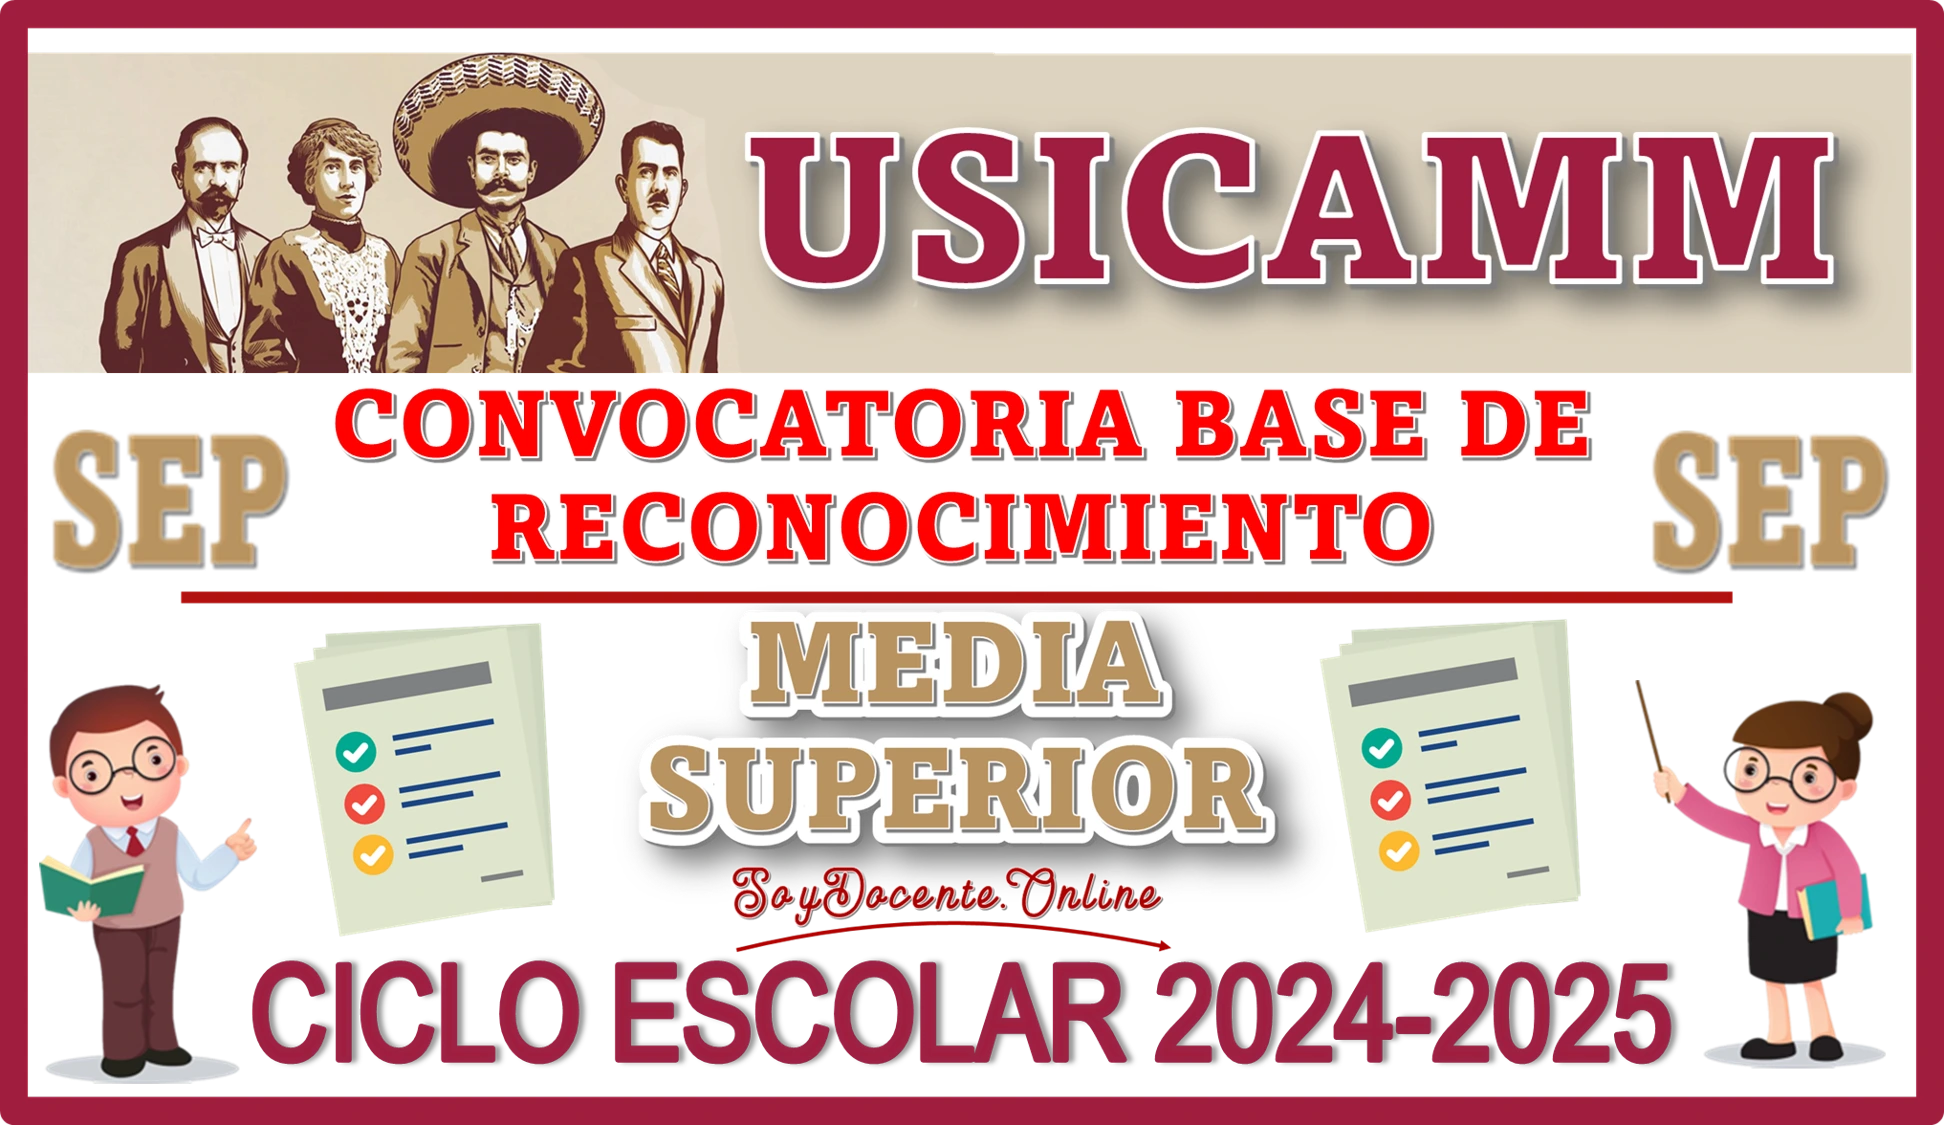 📝👨🏻‍🏫👩🏻‍🏫📢 CONVOCATORIA BASE DE LOS PROCESOS DE RECONOCIMIENTO EN EDUCACIÓN MEDIA SUPERIOR, CICLO ESCOLAR 2024-2025 📝👨🏻‍🏫👩🏻‍🏫📢